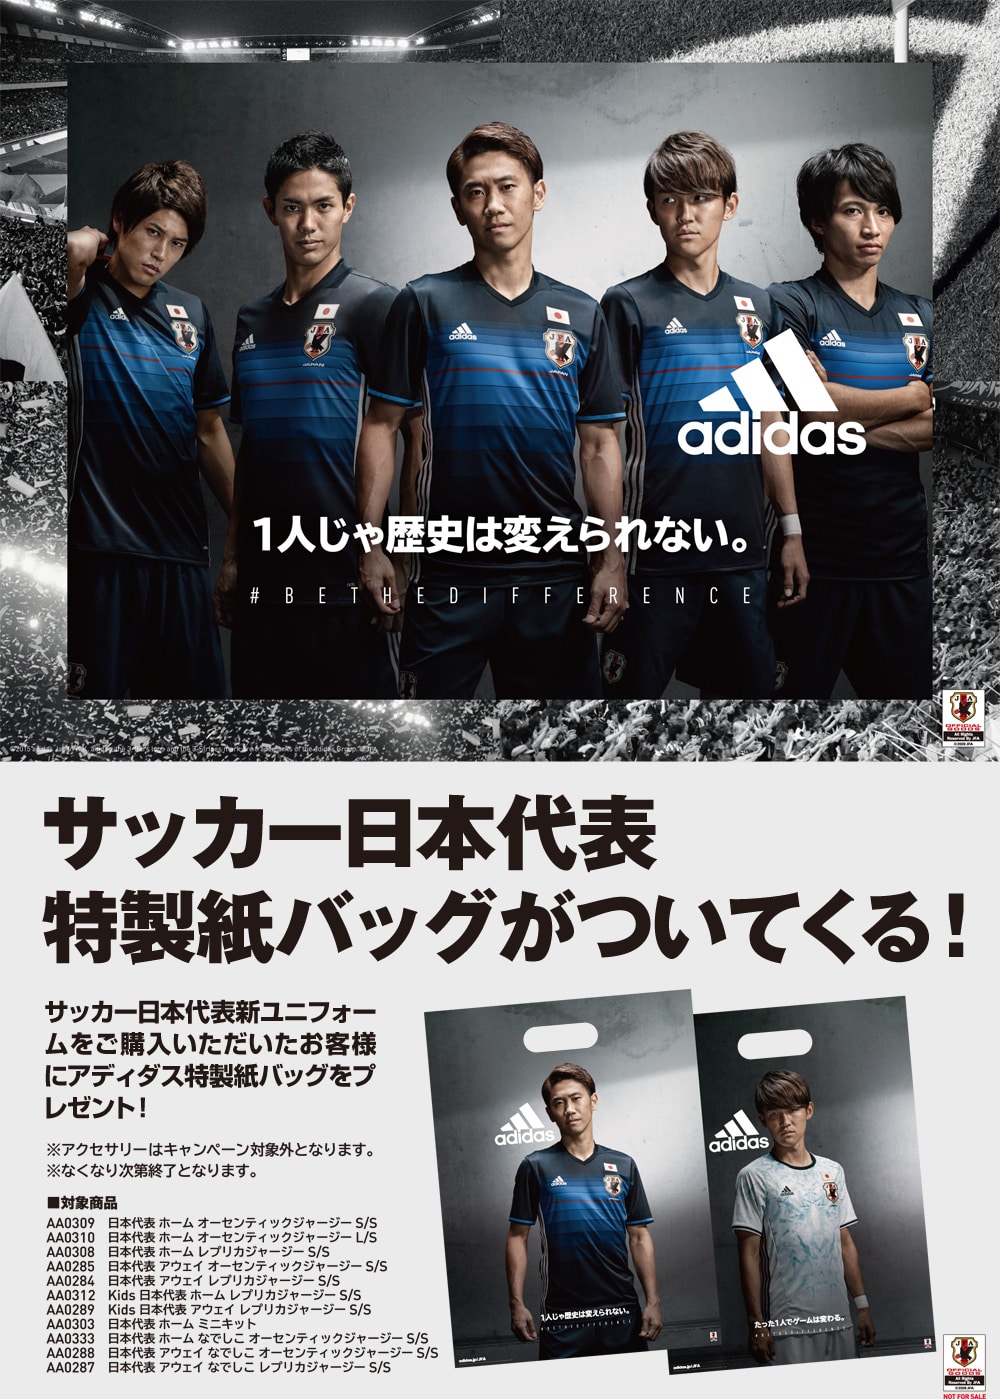 アディダス サッカー日本代表”特製紙バッグ”プレゼント キャンペーン